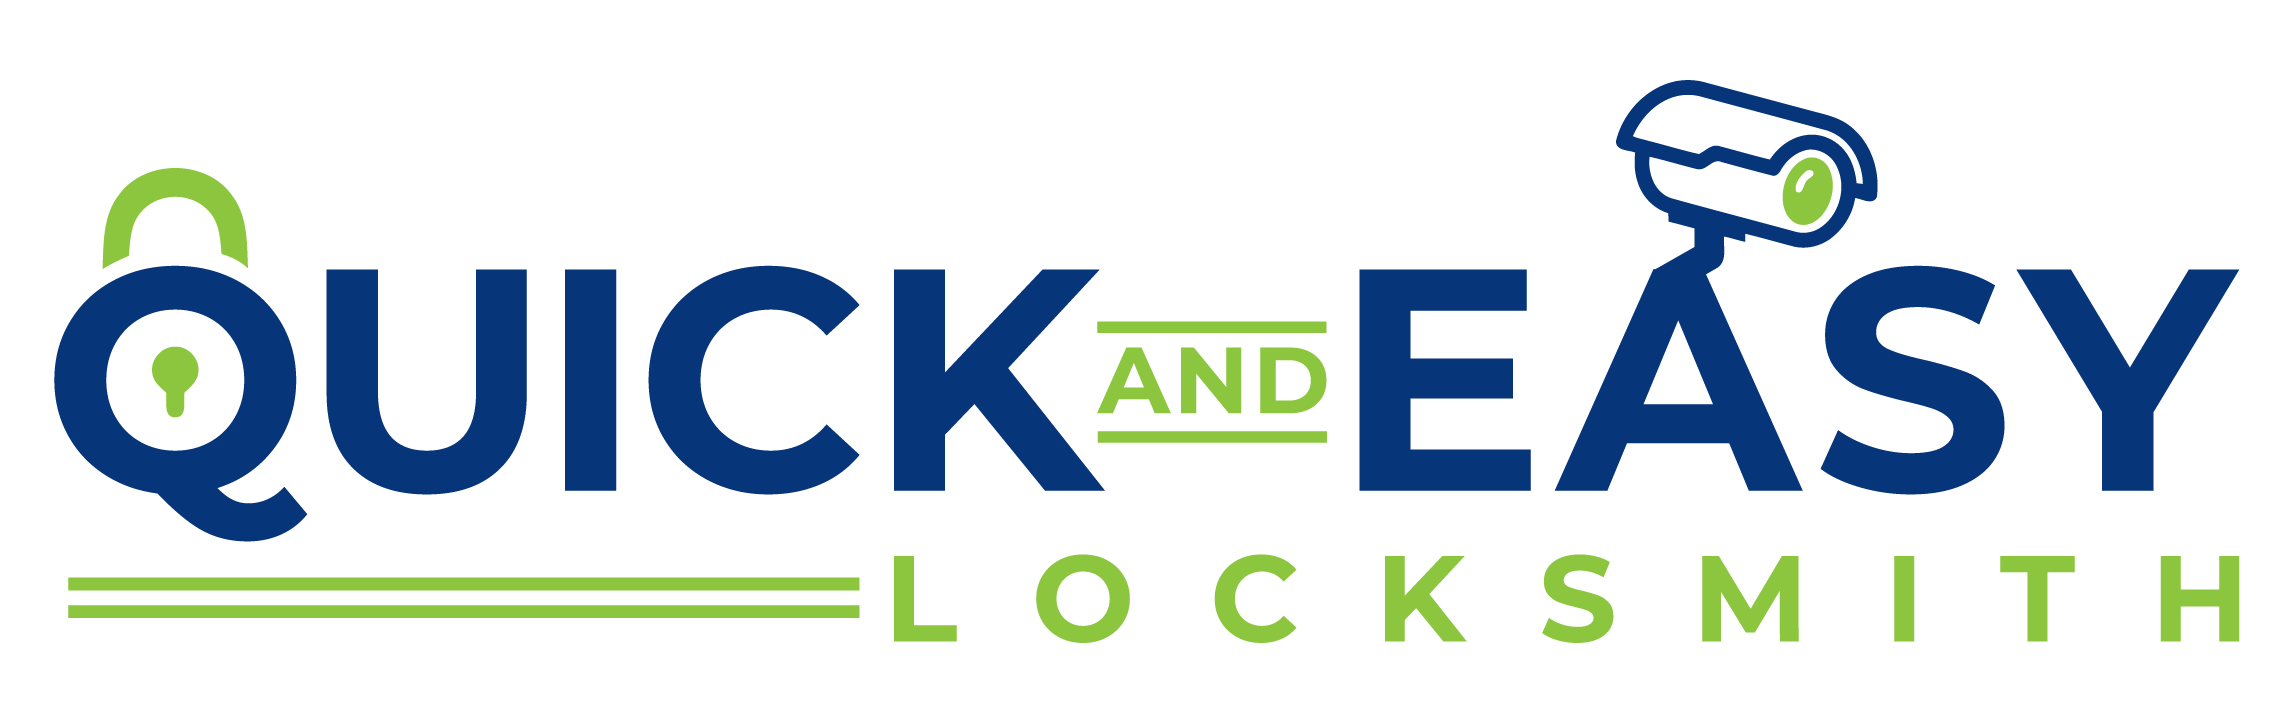 Quickandeasylocksmith logo